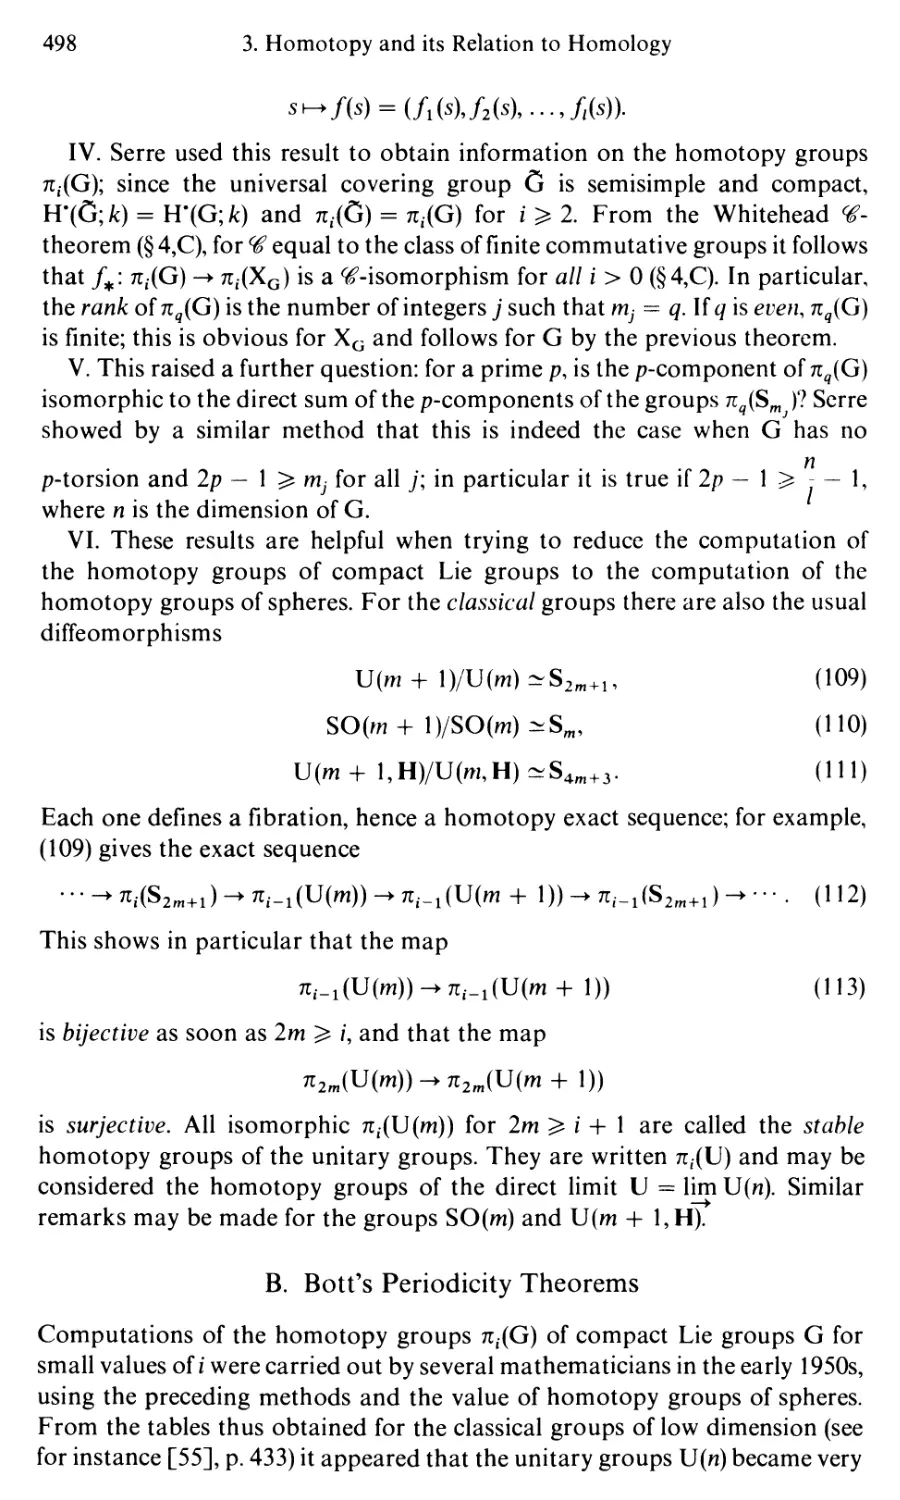 B. Bott's Periodicity Theorems